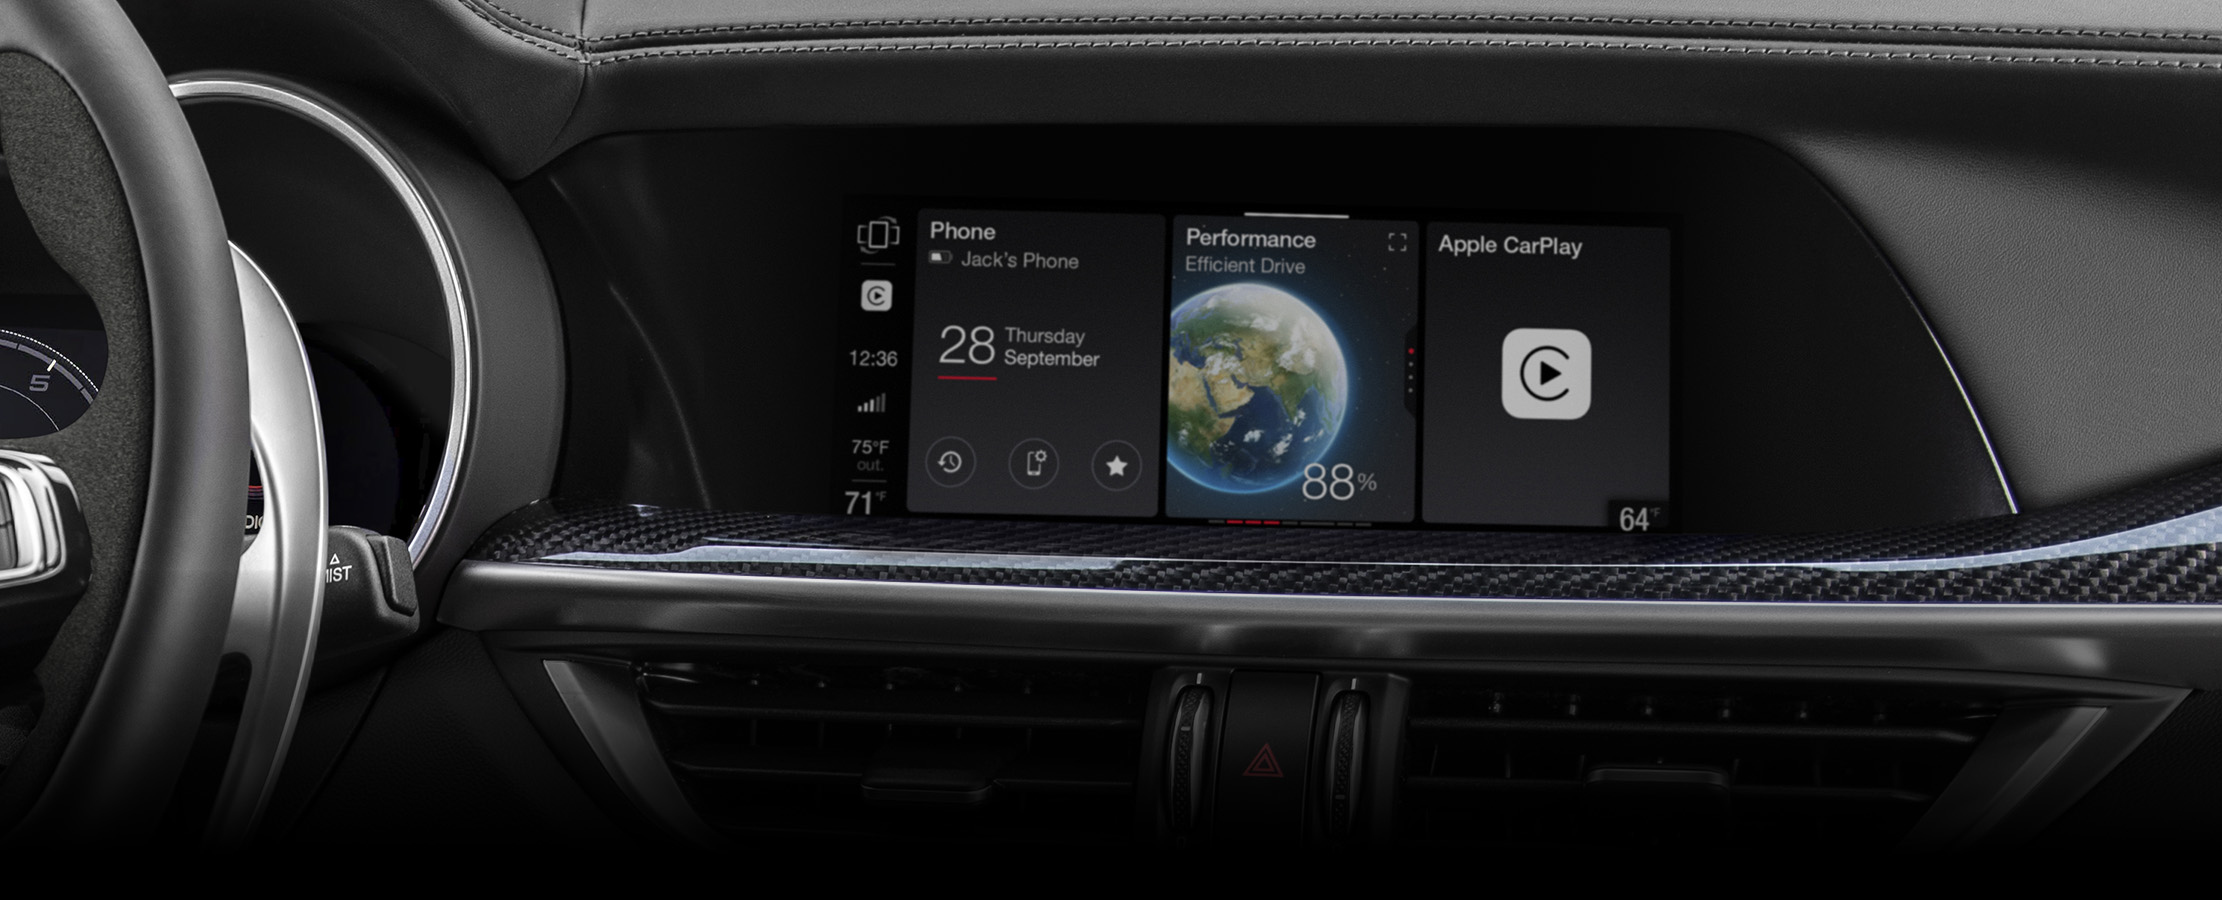 Primer plano de la pantalla multitáctil del Alfa Romeo Stelvio 2024 que muestra una serie de widgets seleccionables, incluidas las estadísticas de rendimiento del vehículo y Apple CarPlay.